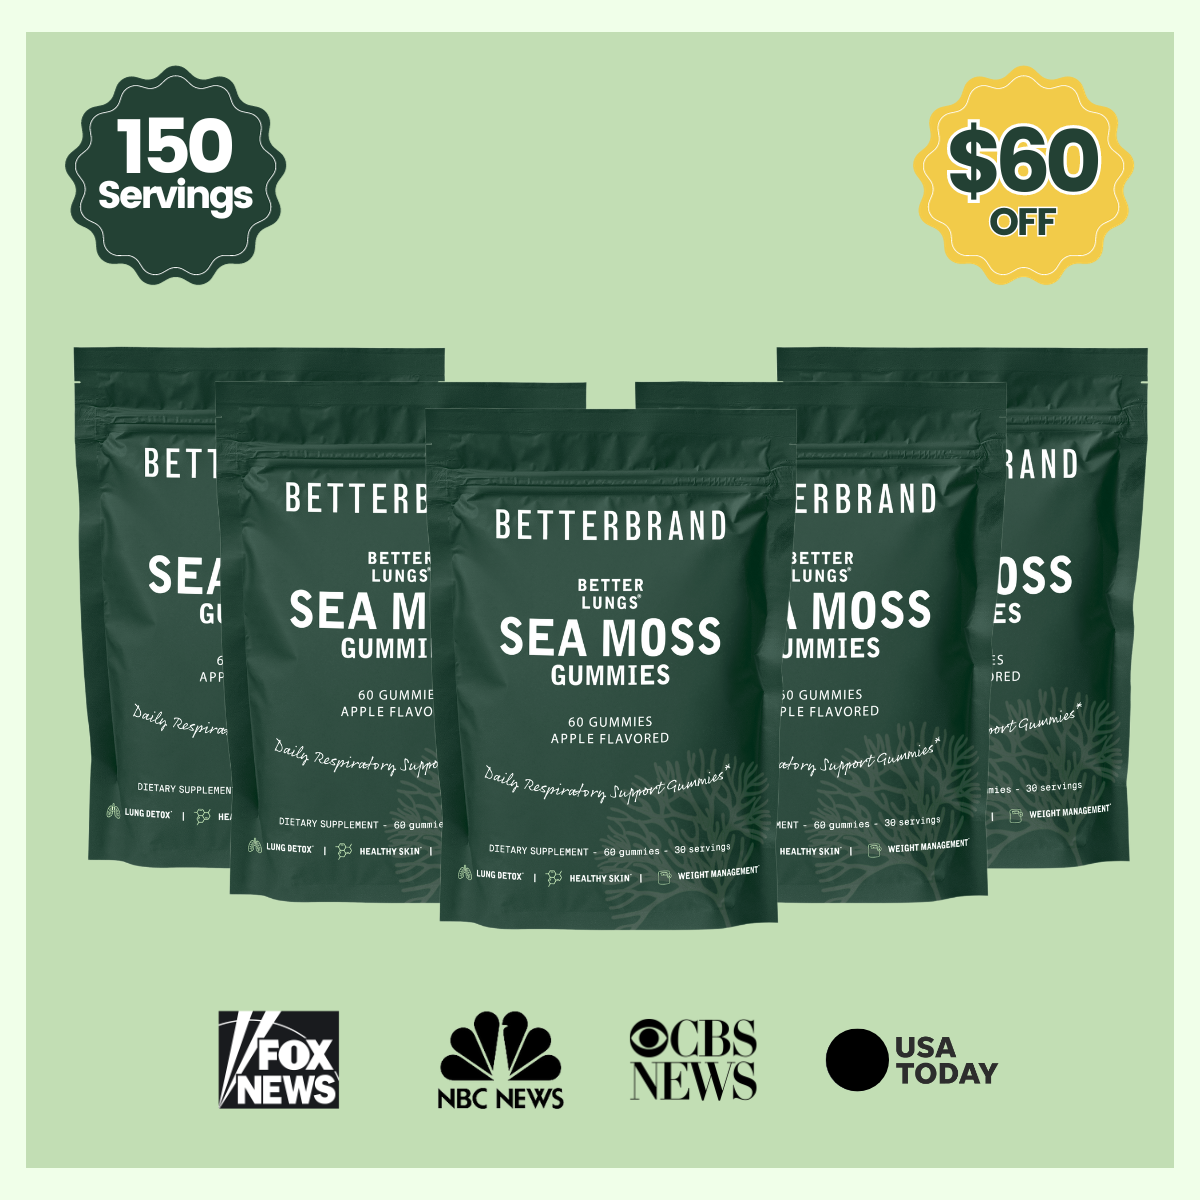 BetterLungs® Sea Moss Gummies - 150 servings - Betterbrand